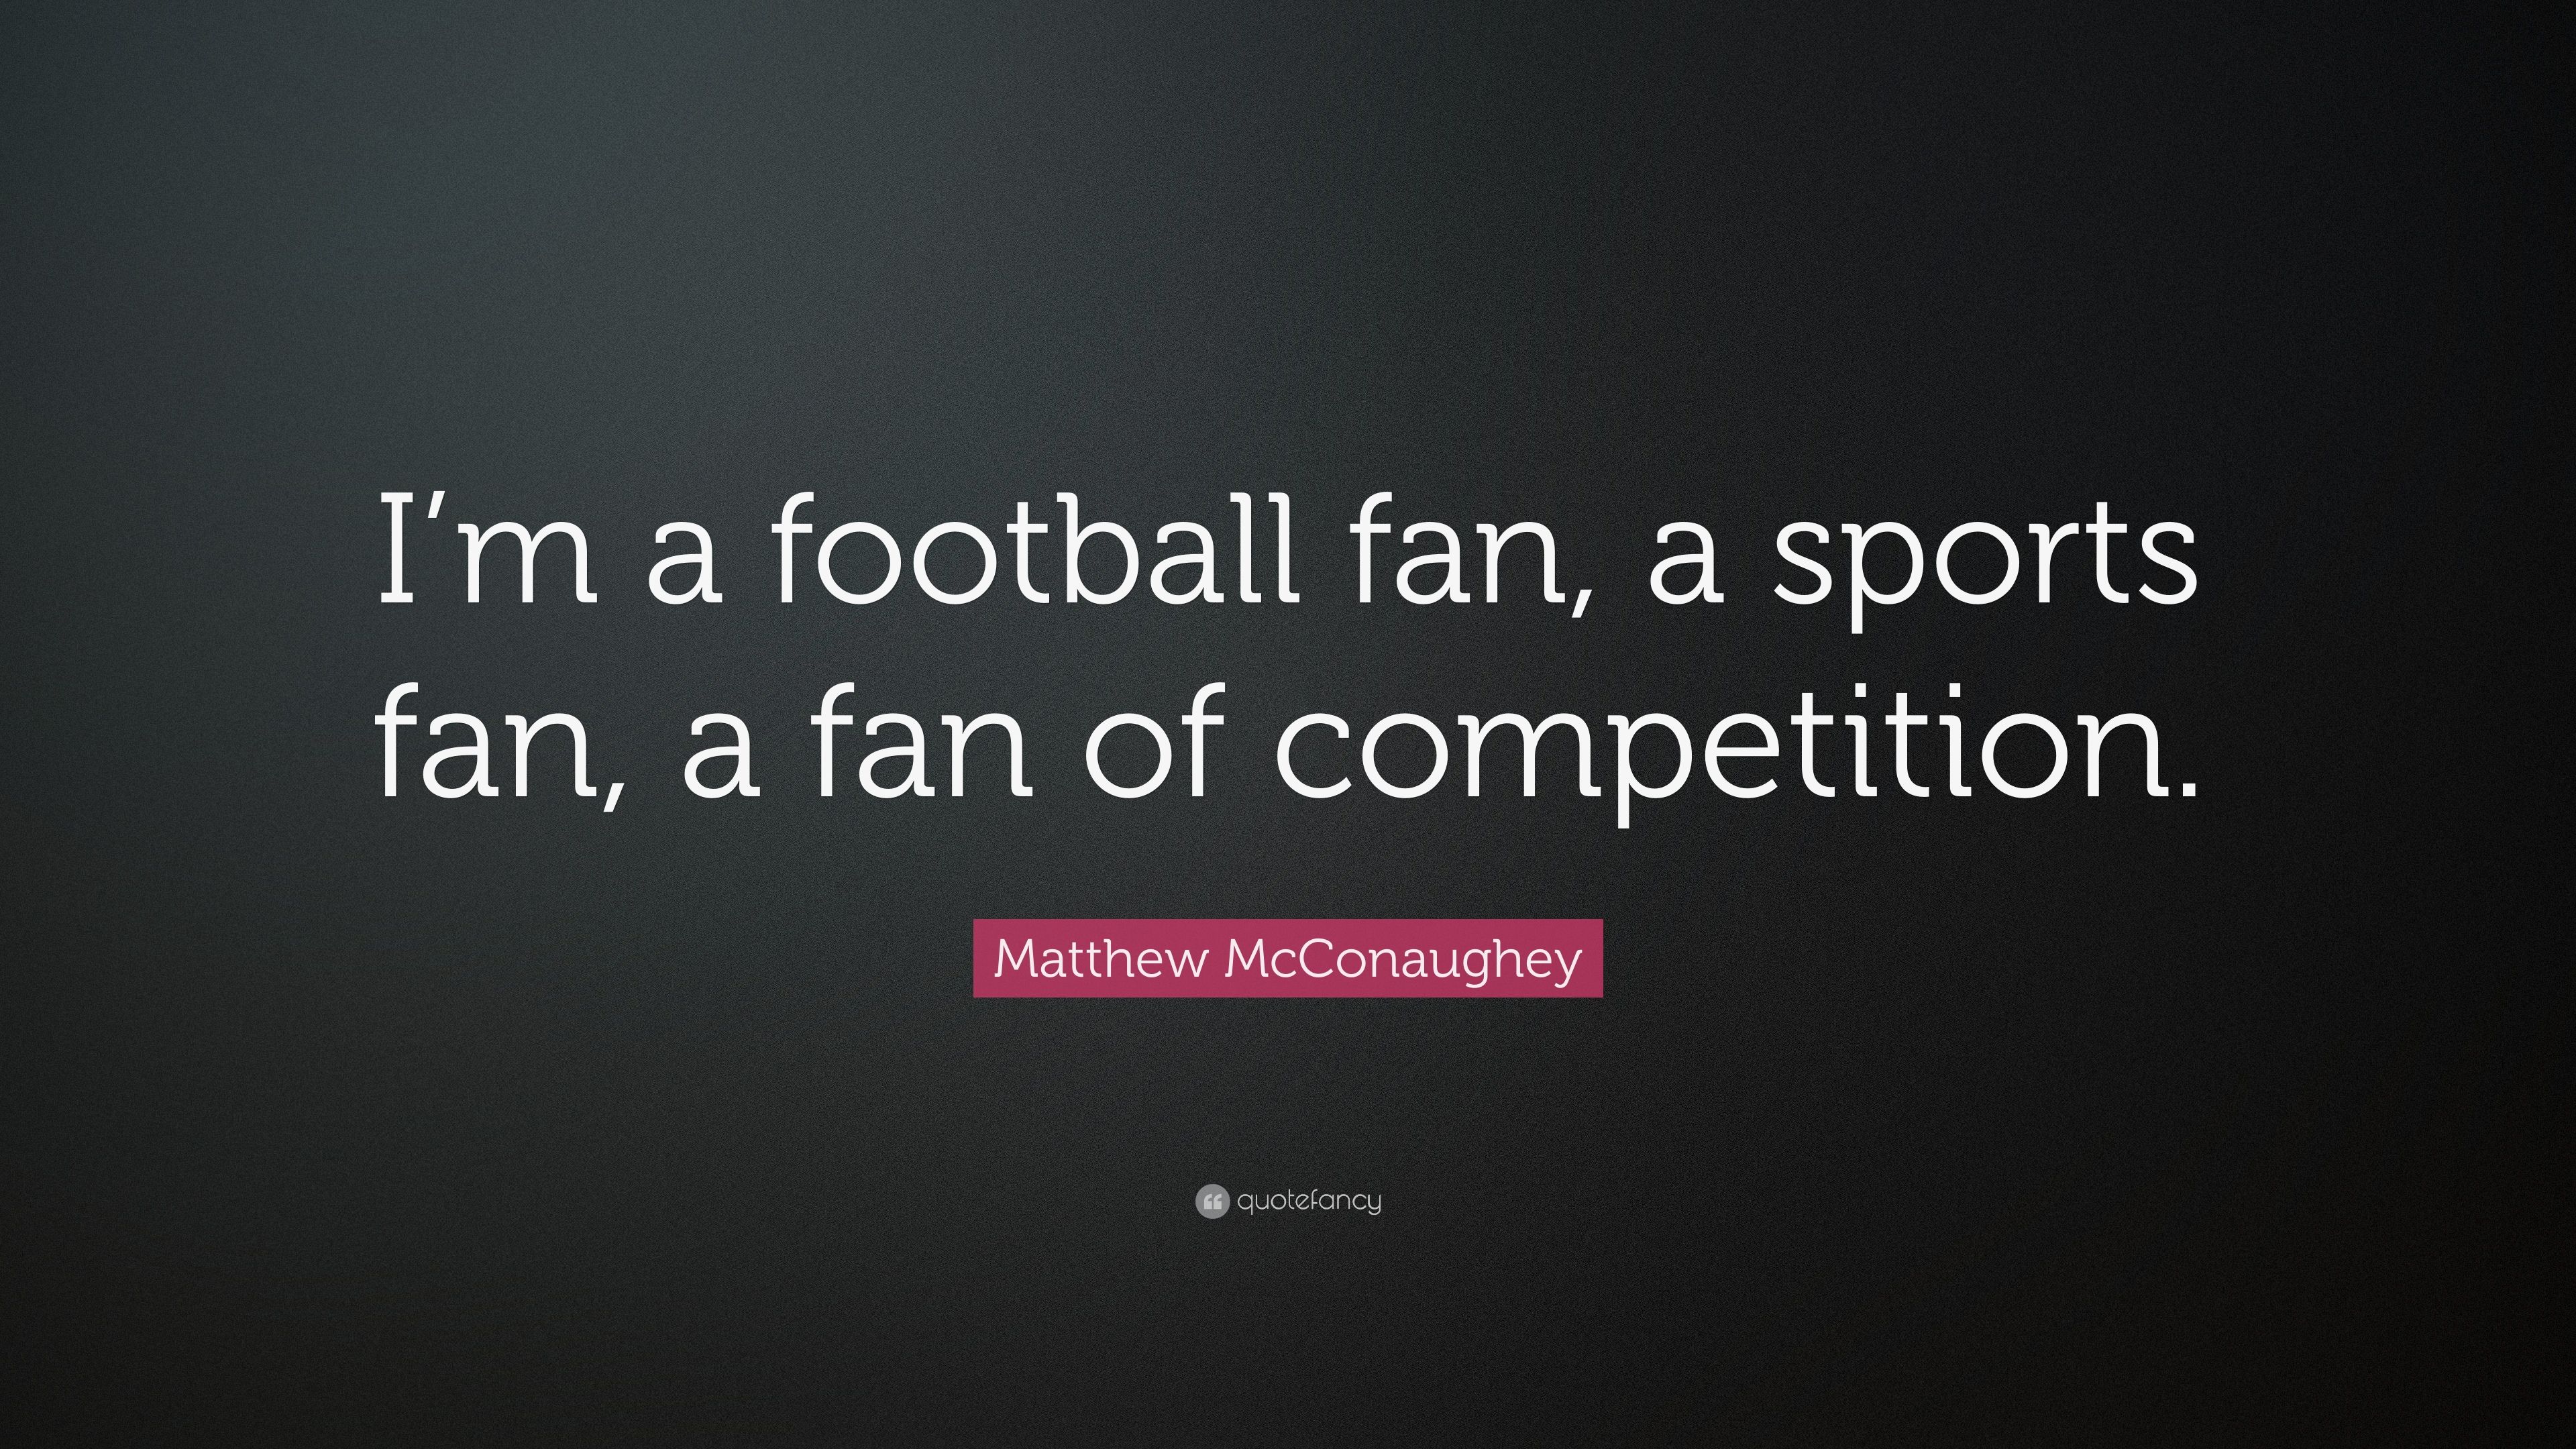 Matthew McConaughey Quote: “I'm a football fan, a sports fan, a fan